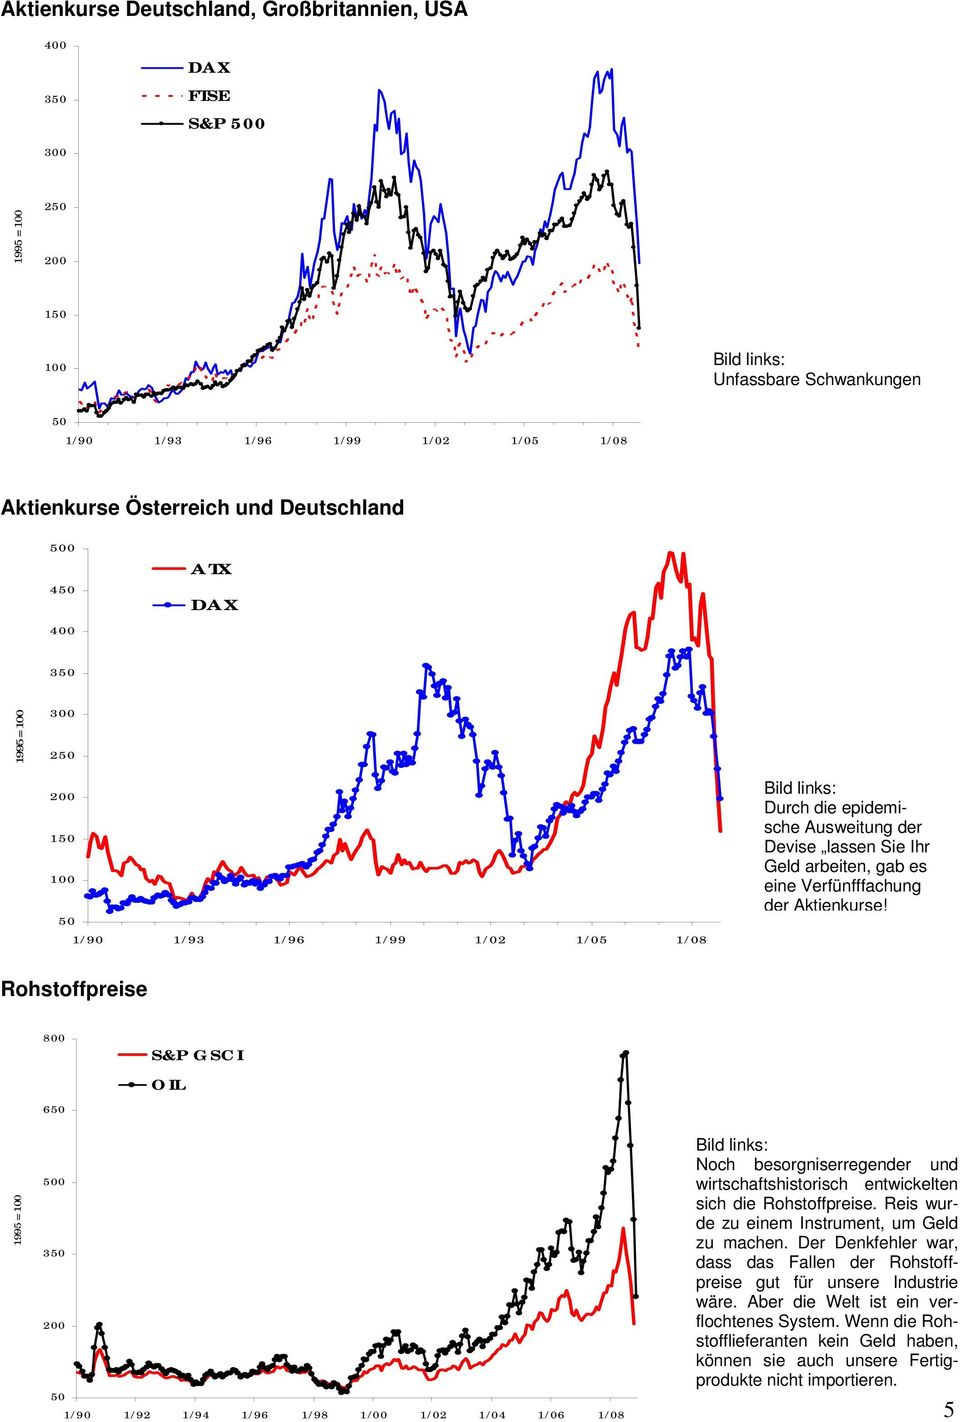 Rohstoffpreise 8 S&P GSCI OIL 6 1995 = 1 3 2 1/9 1/92 1/94 1/96 1/98 1/ 1/2 1/4 1/6 1/8 Bild links: Noch besorgniserregender und wirtschaftshistorisch entwickelten sich die Rohstoffpreise.